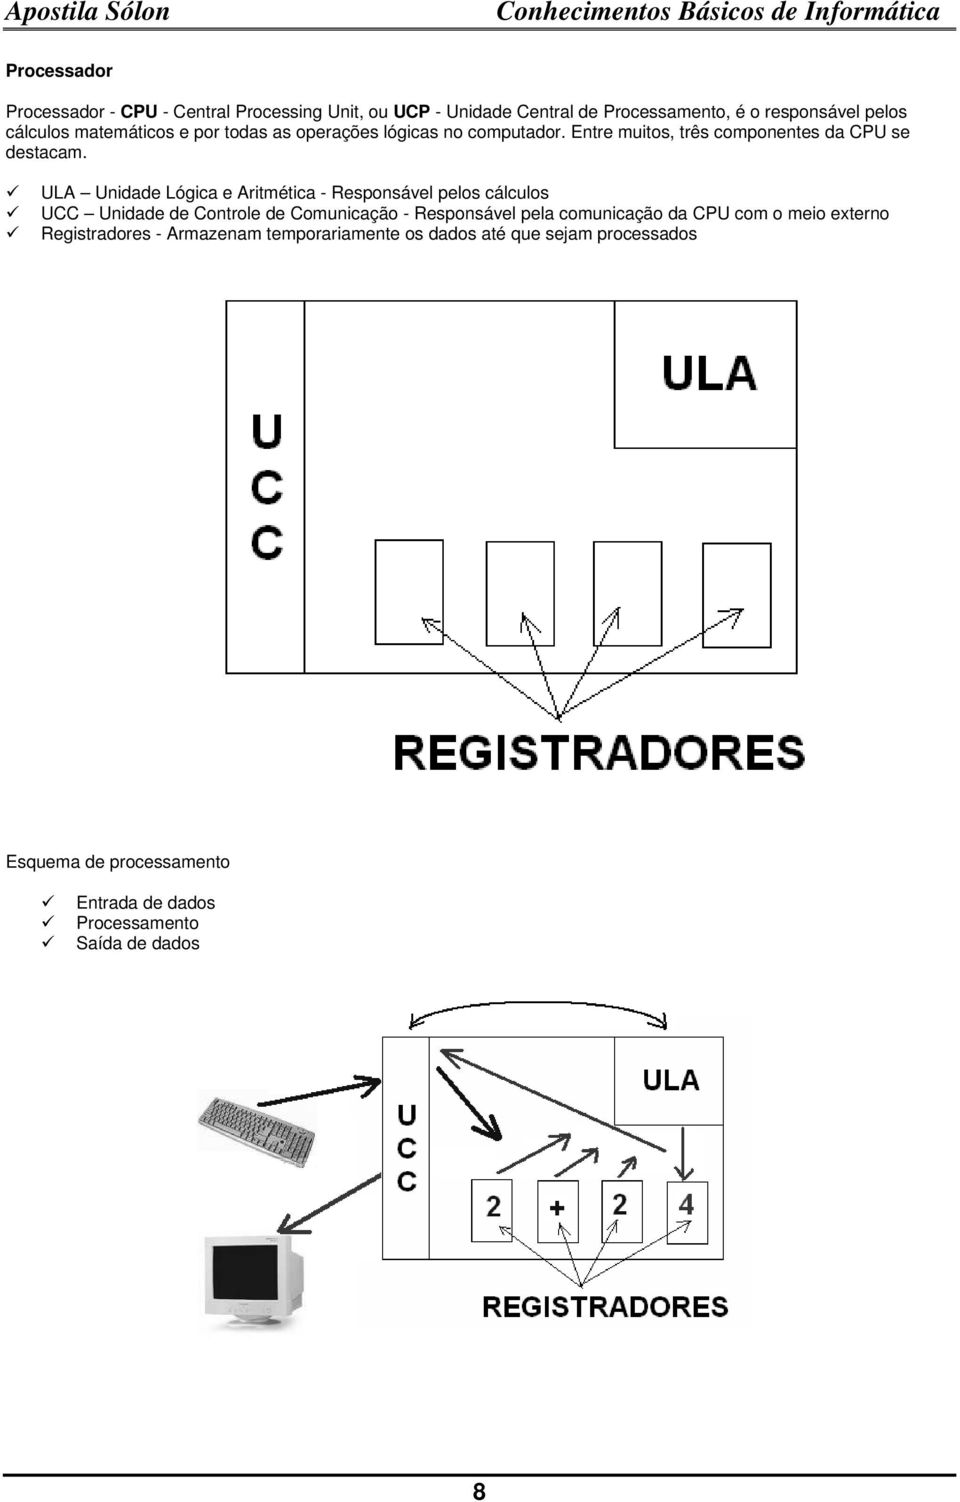 ULA Unidade Lógica e Aritmética - Responsável pelos cálculos UCC Unidade de Controle de Comunicação - Responsável pela comunicação da